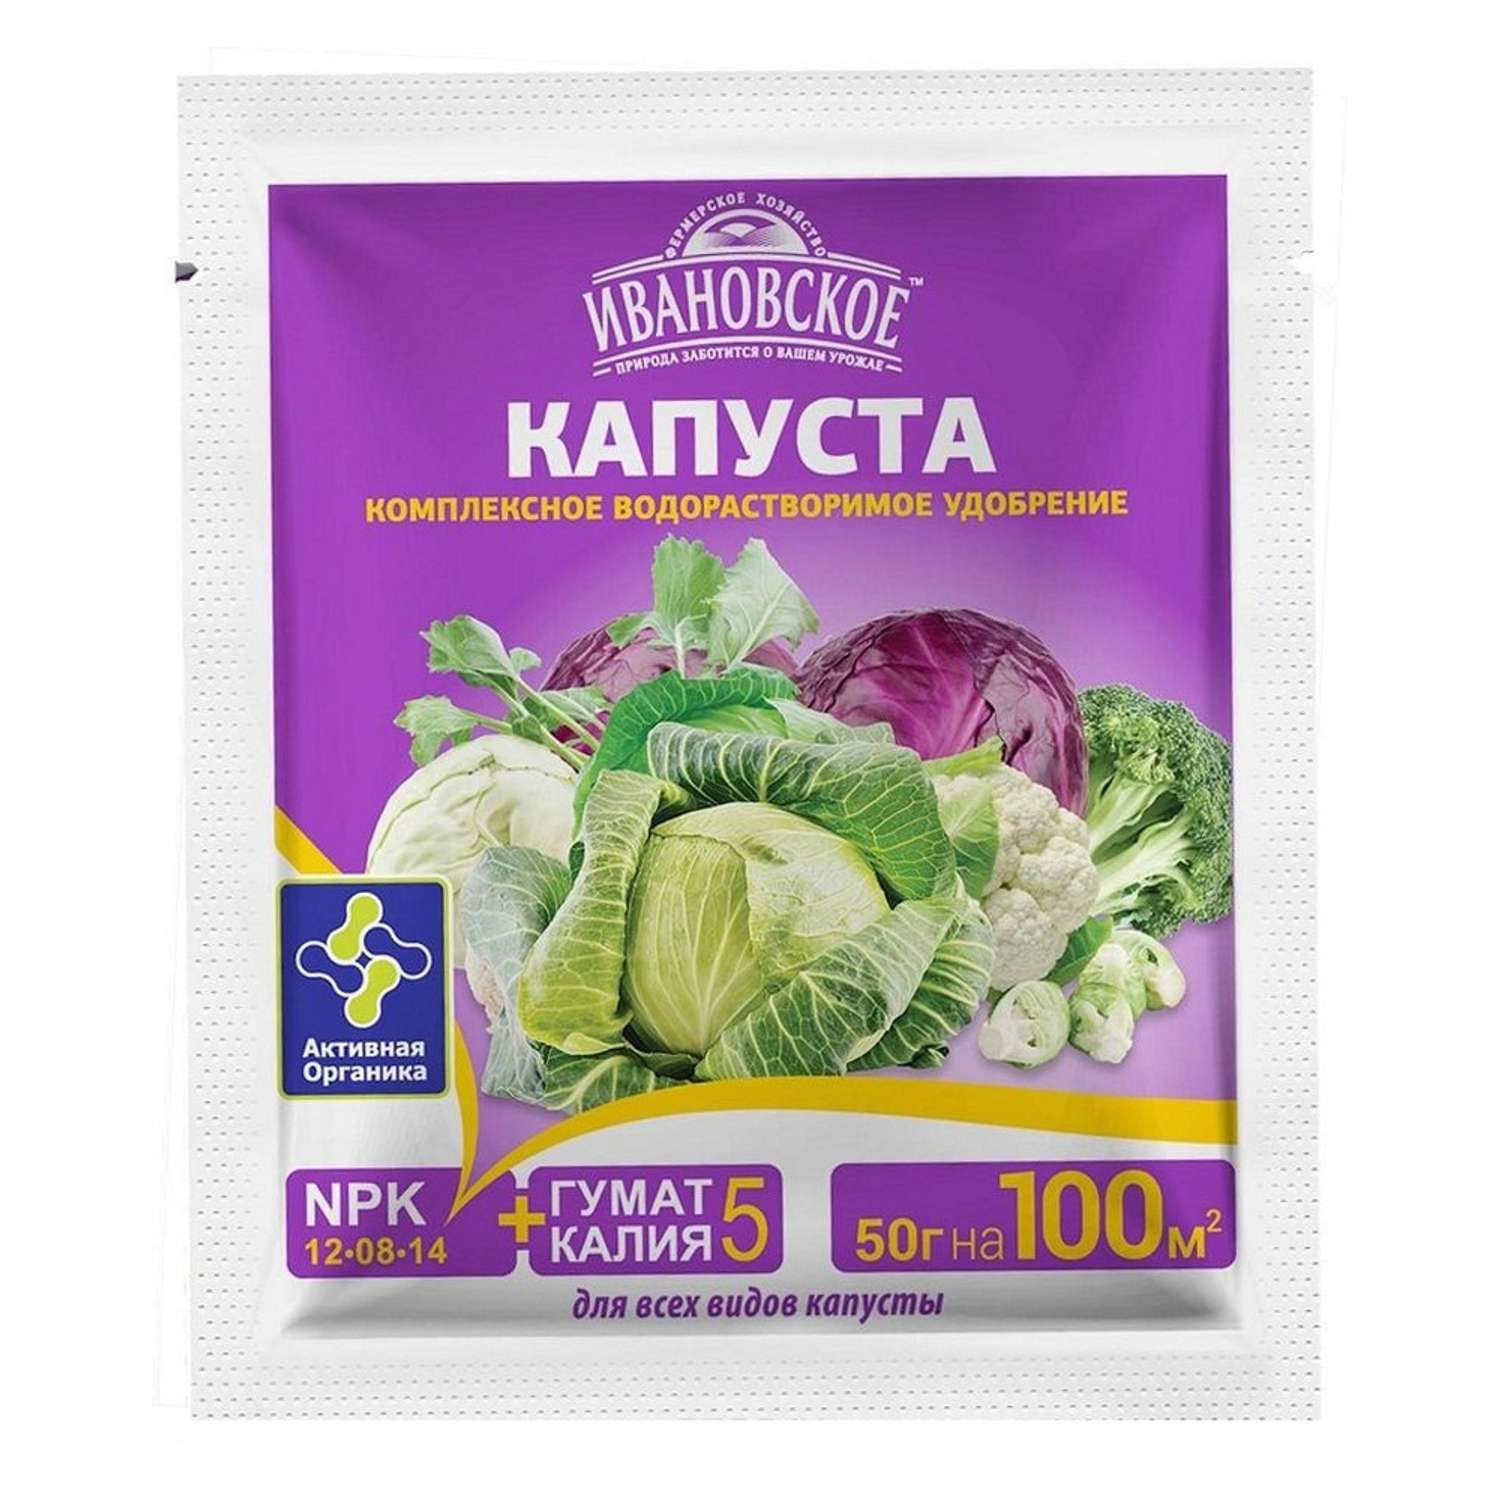 Удобрение Фермер Хозяйство Ивановское Капуста для всех видов капусты 50г - фото 2